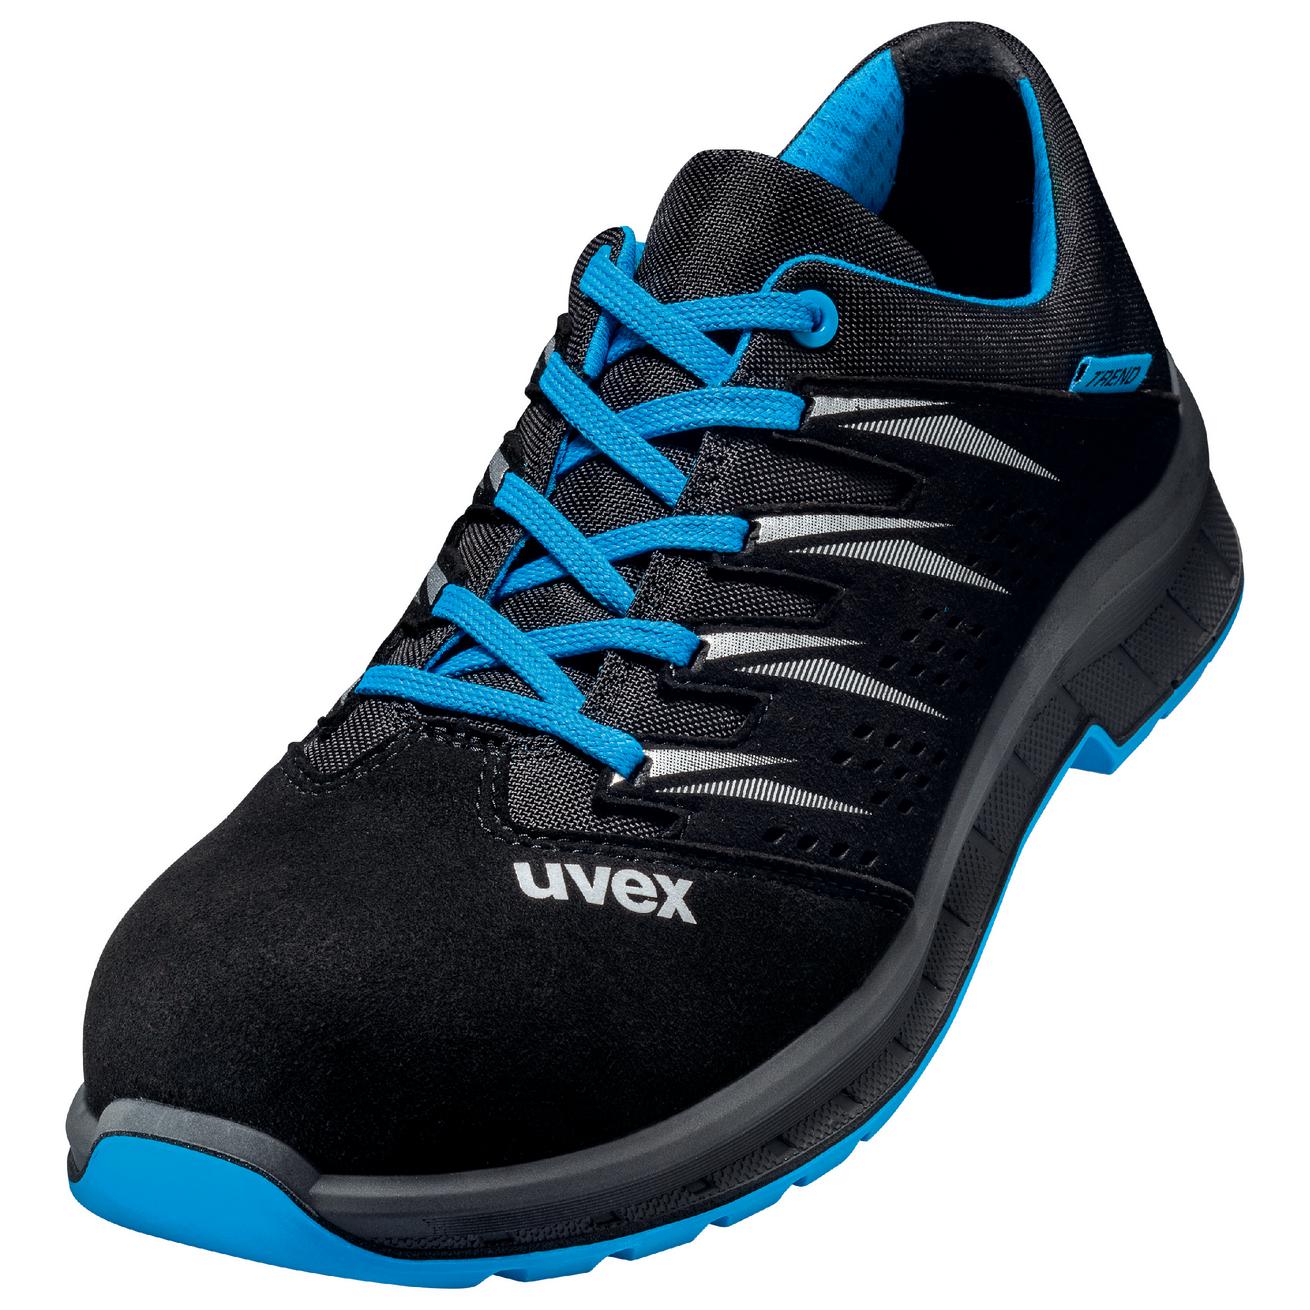 Perf. polobotka obuv uvex 2 trend, šíře 11, S1 SRC, černá/modrá 6937 Velikost: 44, Kód produktu: 6937844